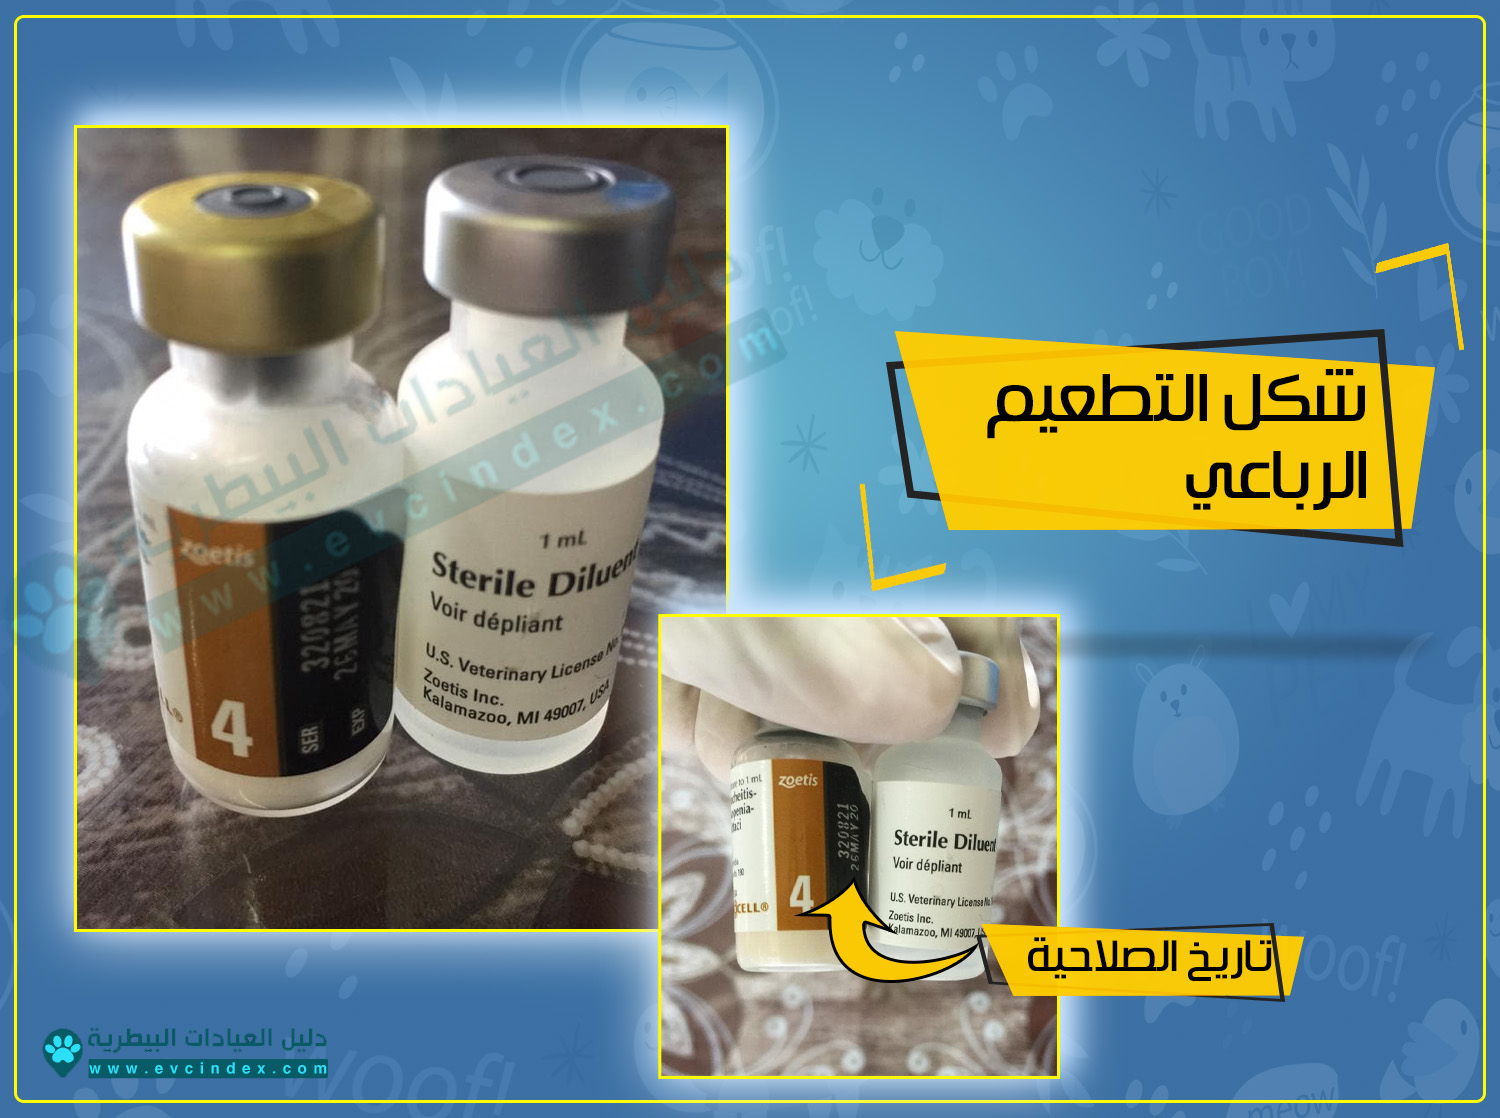 اسعار تطعيمات القطط الثلاثي و الرباعي 2020 في مصر دليل العيادات البيطرية دكتور بيطري بين يديك